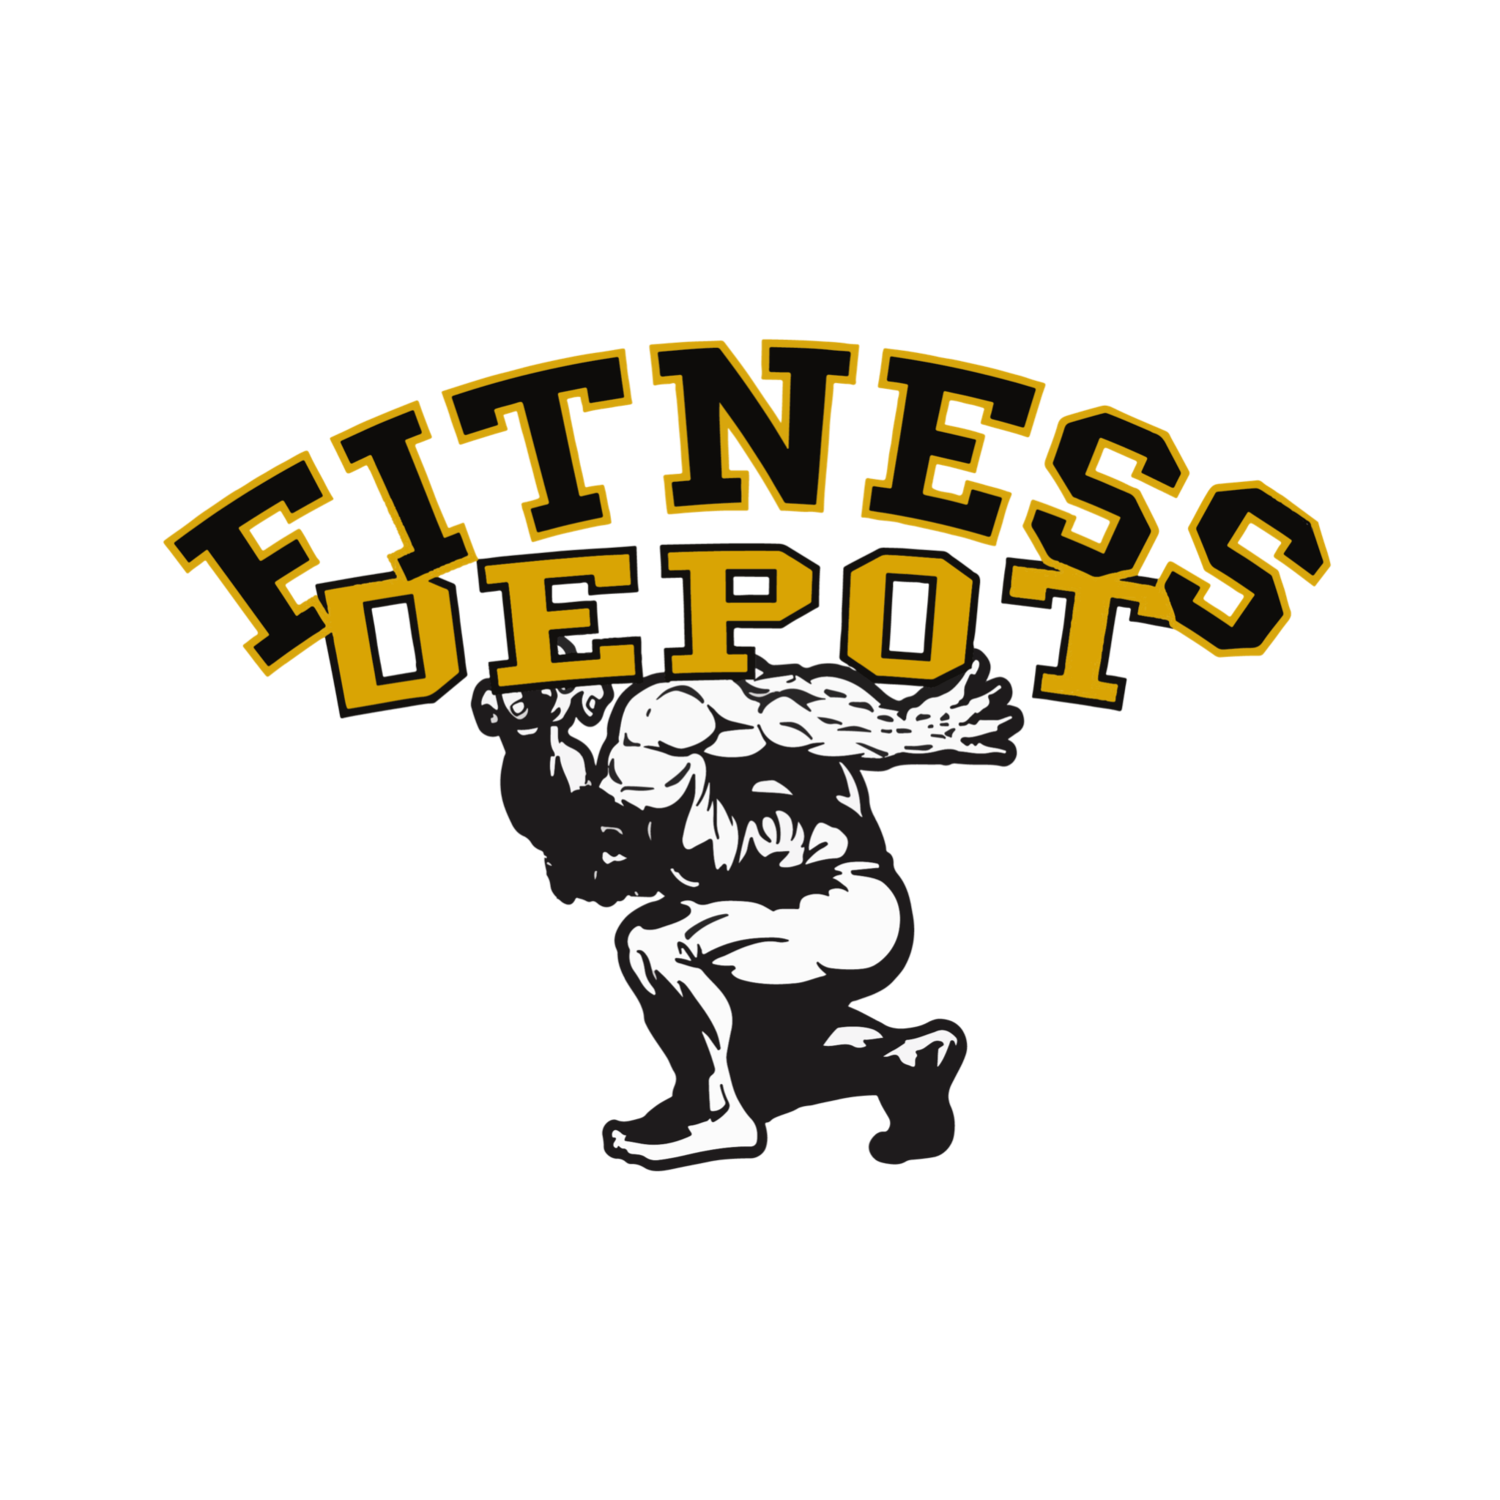 location — Fitness Depot